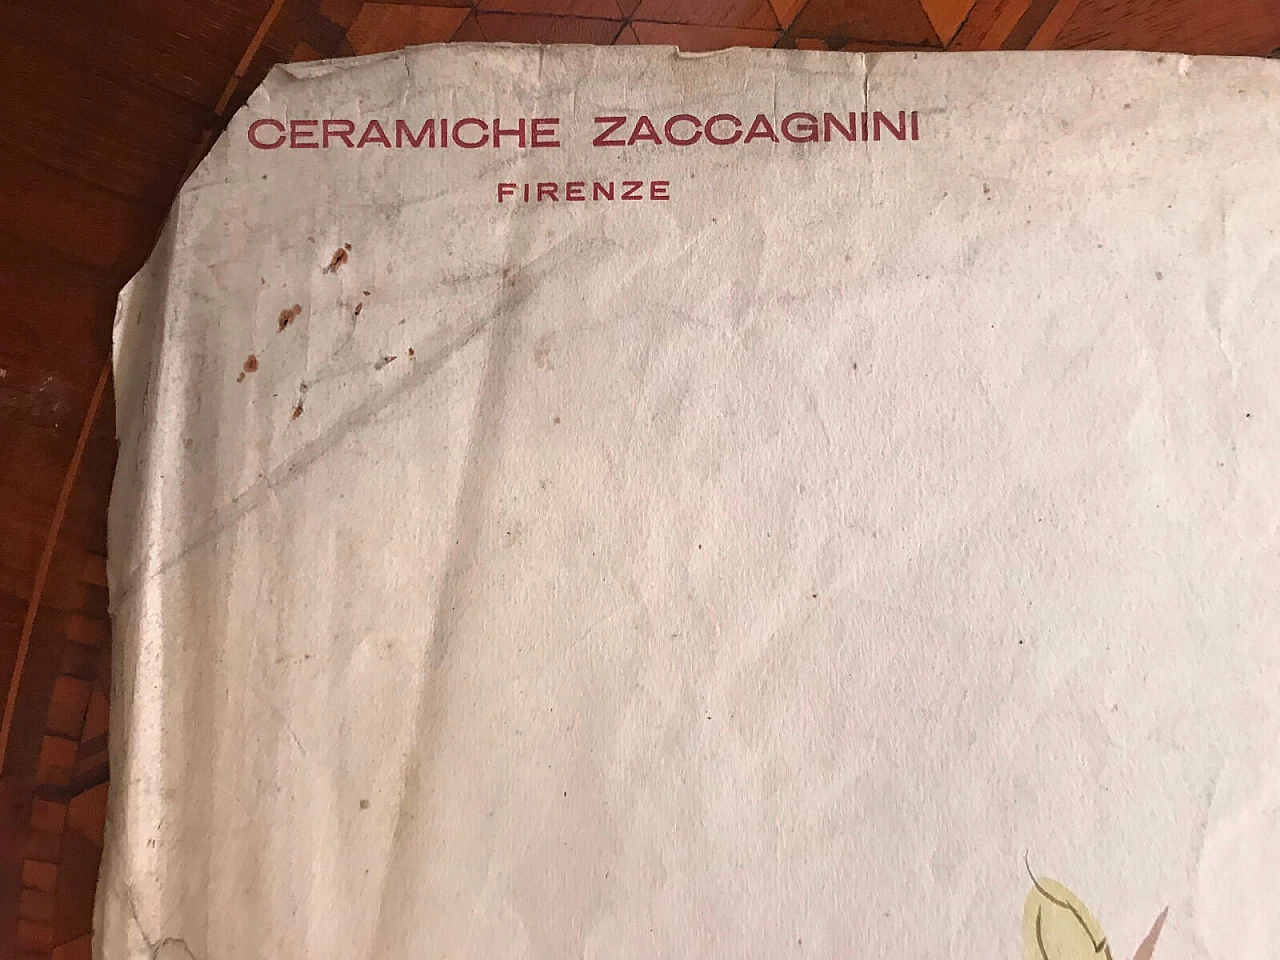 Acquerello preparatorio Ceramiche Zaccagnini, fagiano 5